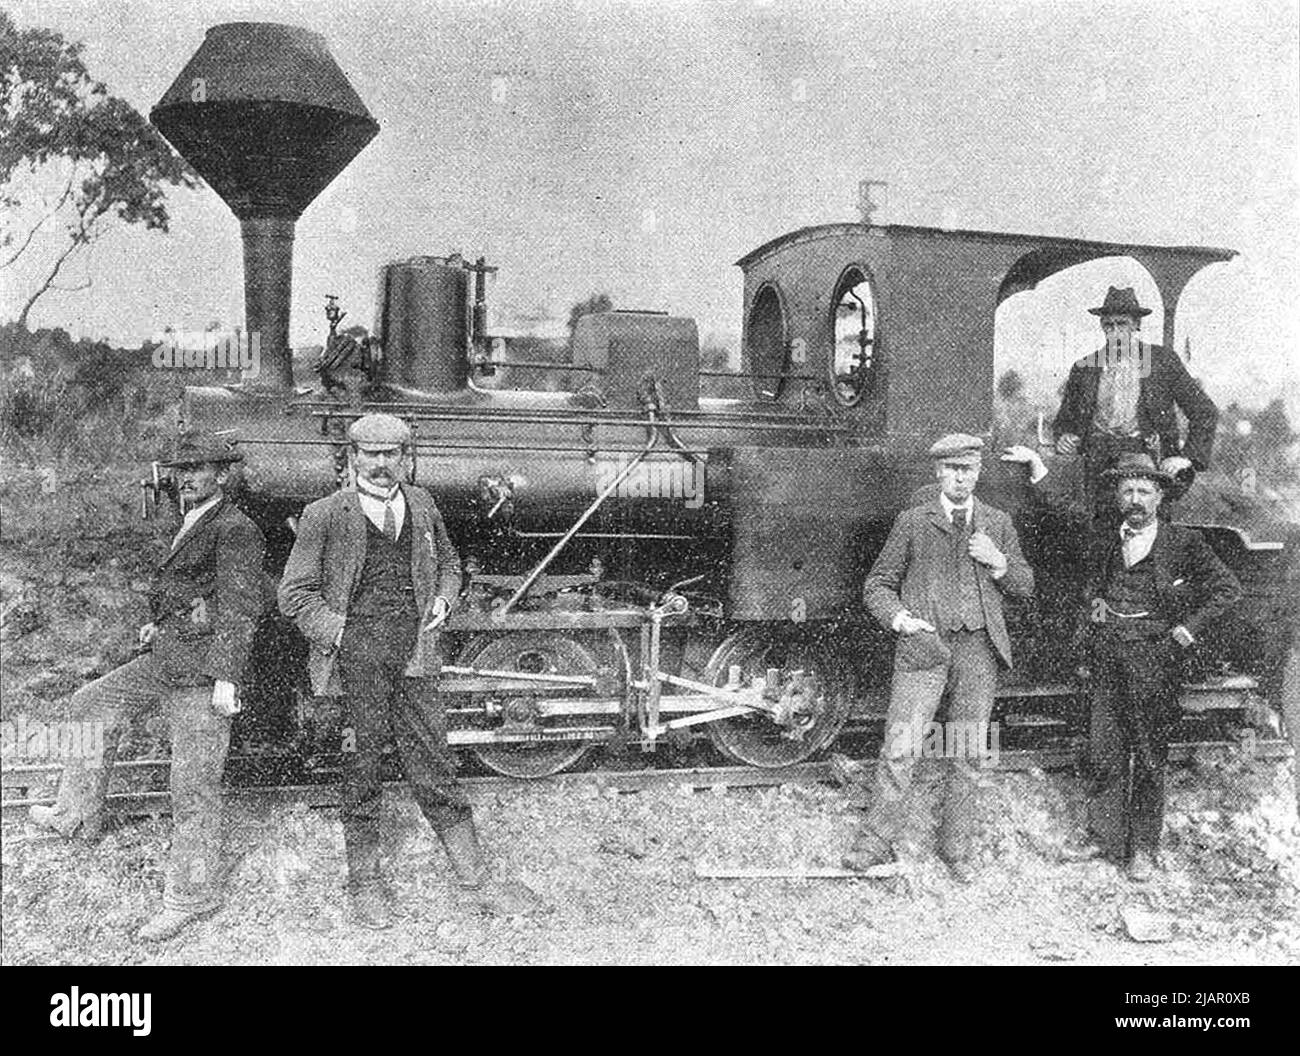 Bau des Denison-Kanals. Krauss-Lokomotive. Diese Lokomotive ging nach Fertigstellung des Kanals zur Sandfly Colliery Tramway ca. 1902 Stockfoto